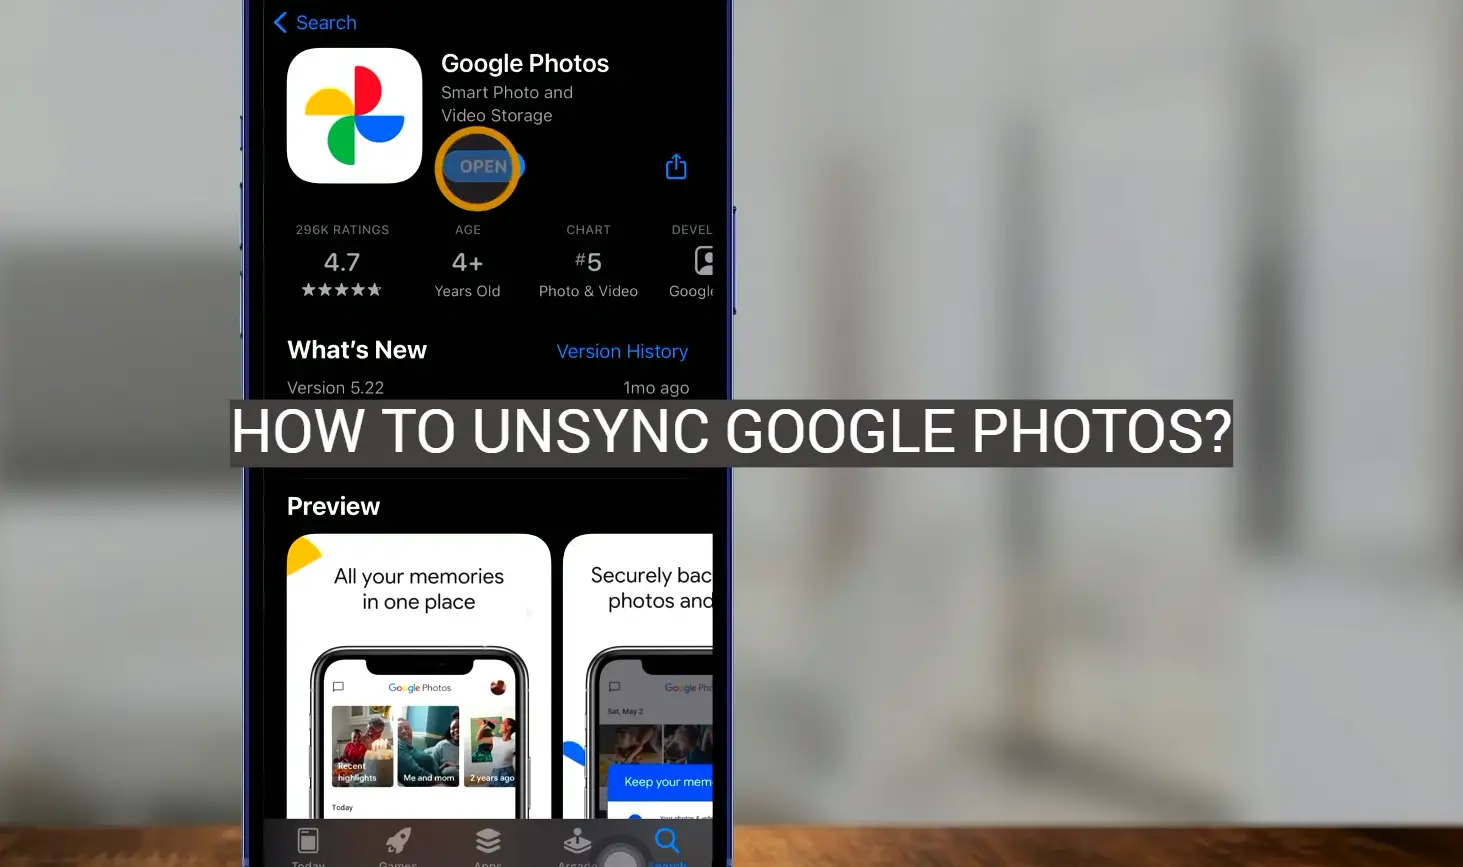 How to Unsync Google Photos?